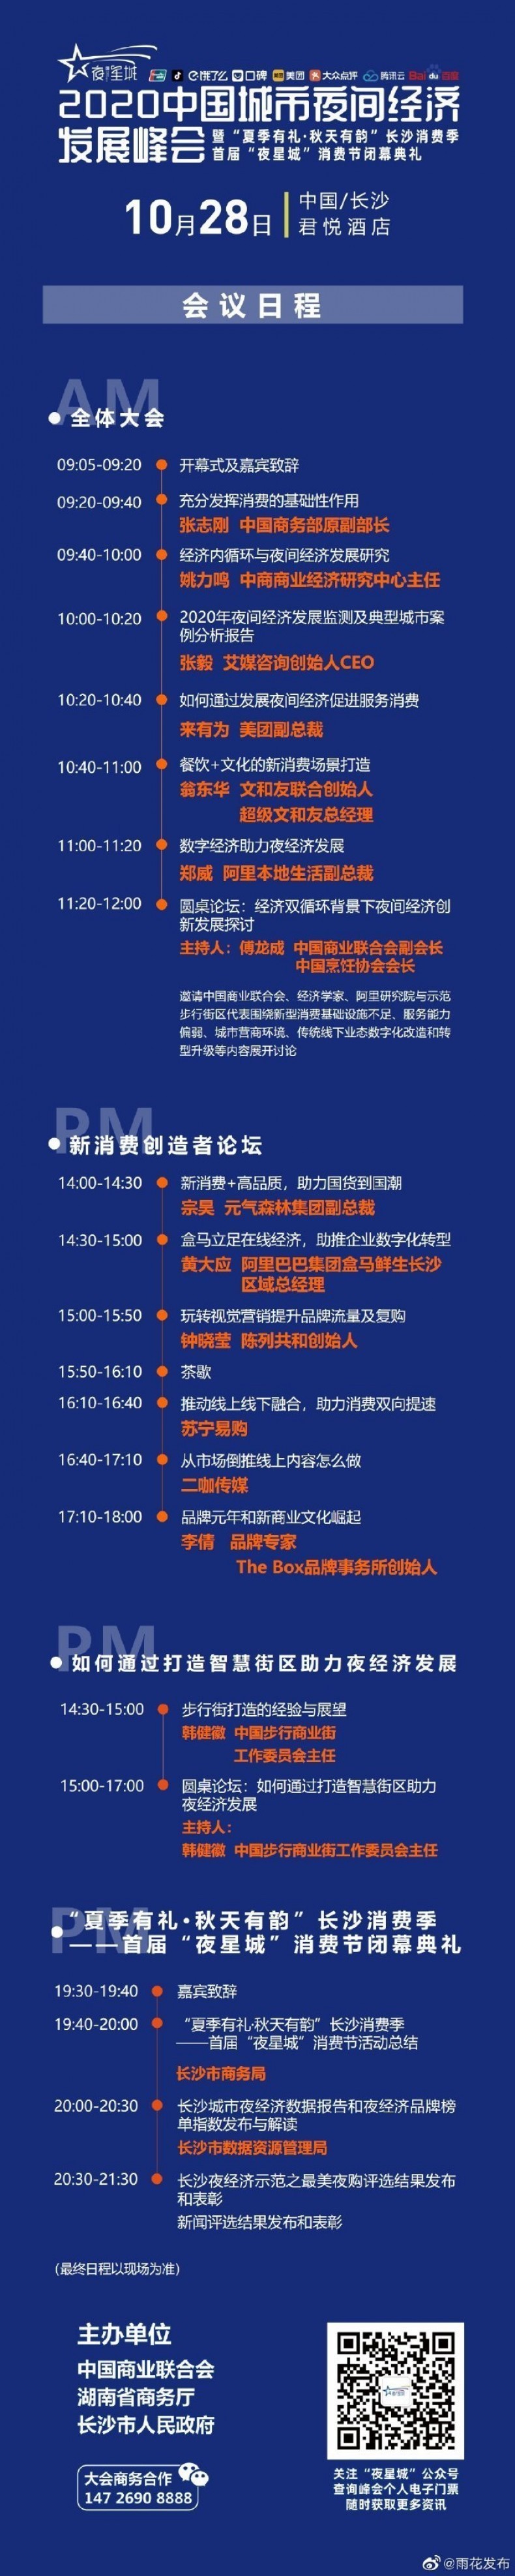 2020中国城市夜间经济发展峰会时间 地址 会议日程表